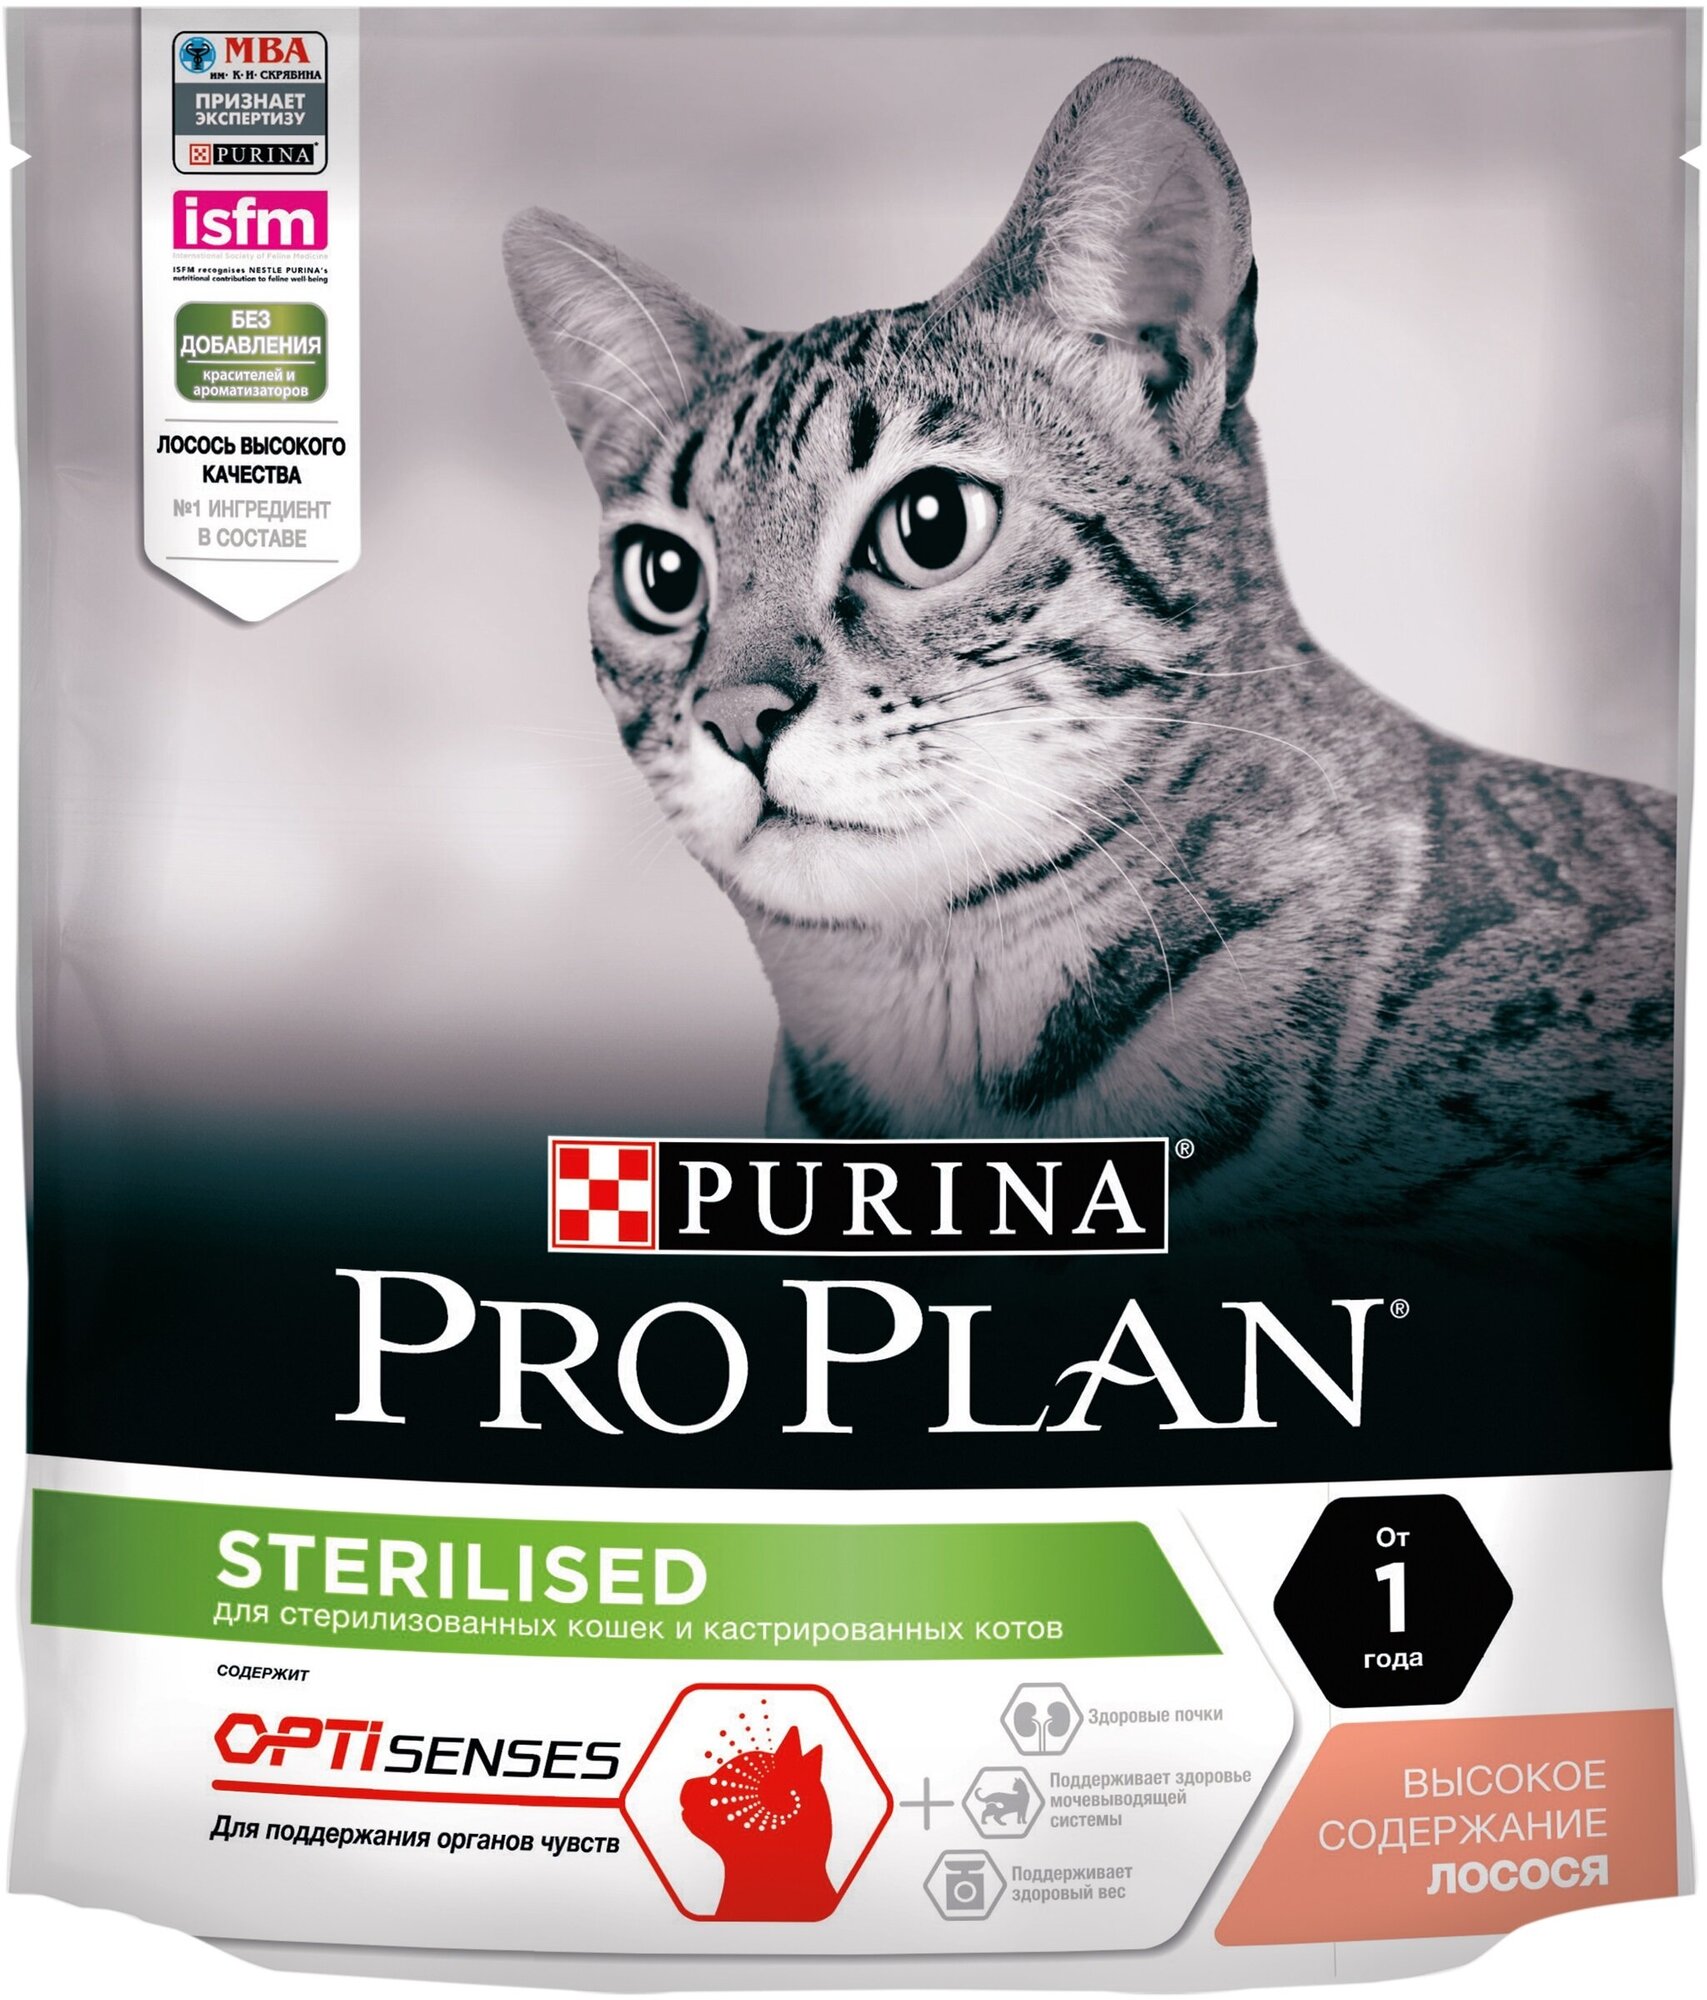 Pro Plan Sterilised для стерилизованных кошек (для поддержания органов чувств) Лосось, 400 гр.